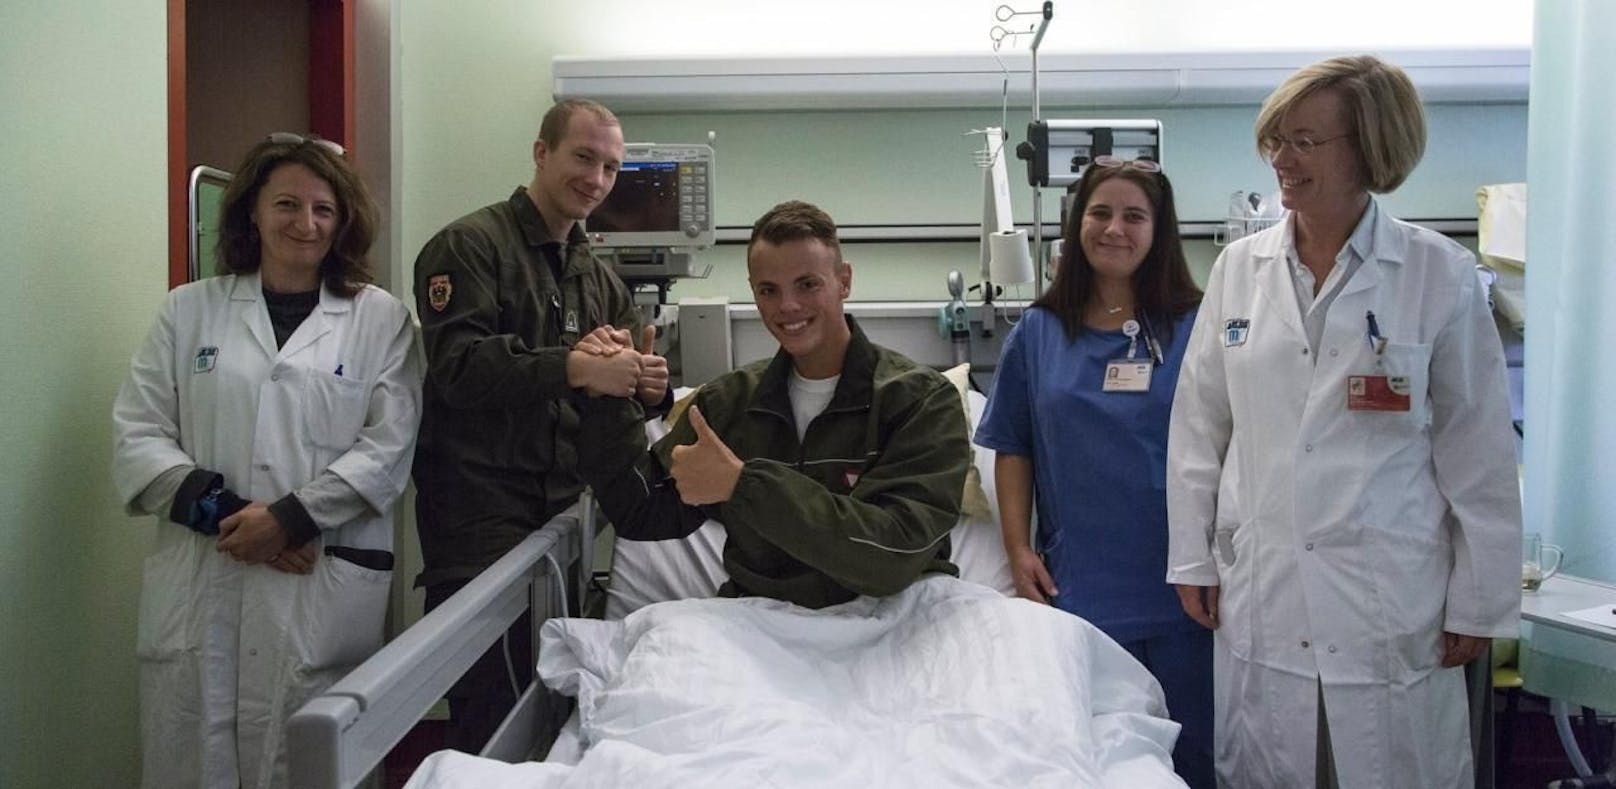 Korporal bedankt sich im Krankenhaus bei seinem Lebensretter.